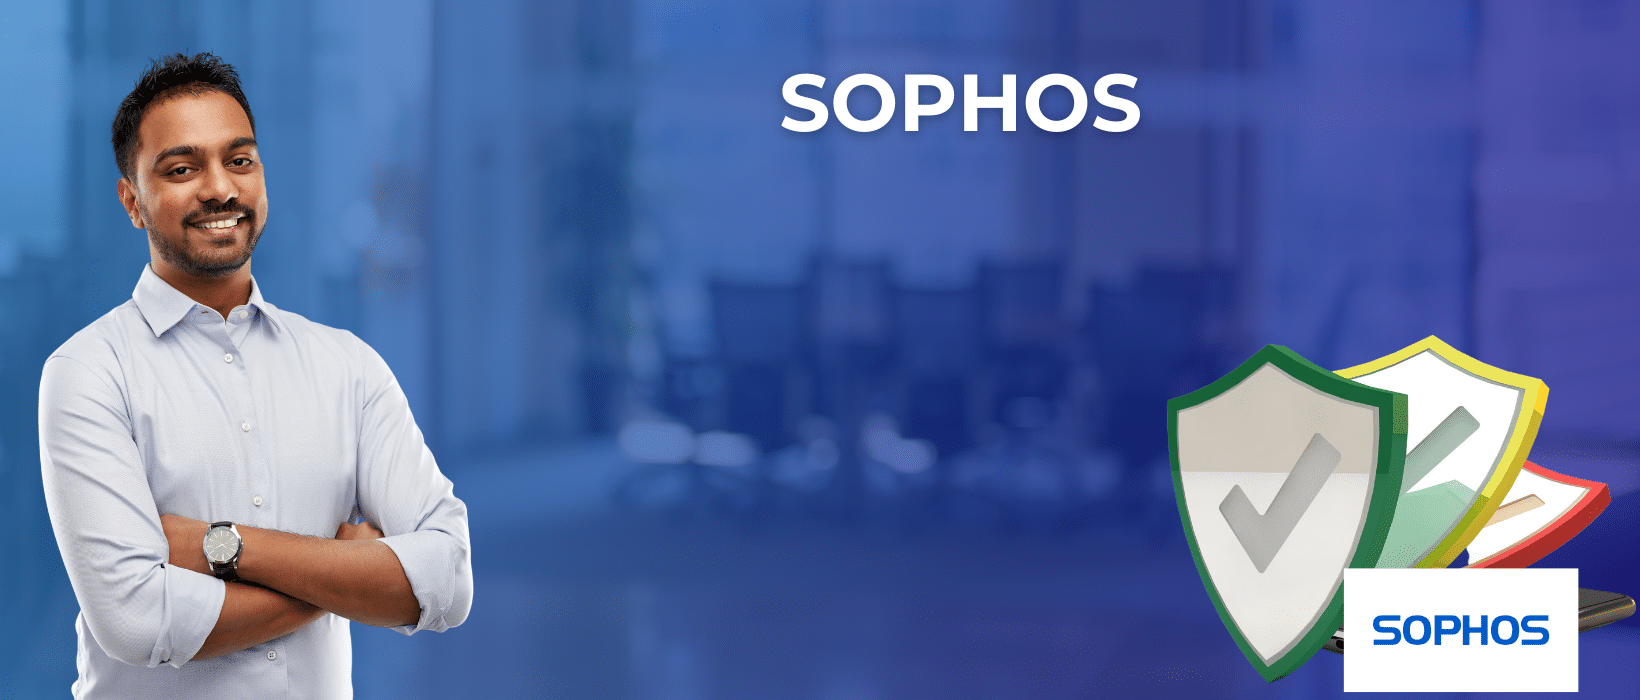 SOPHOs feature image